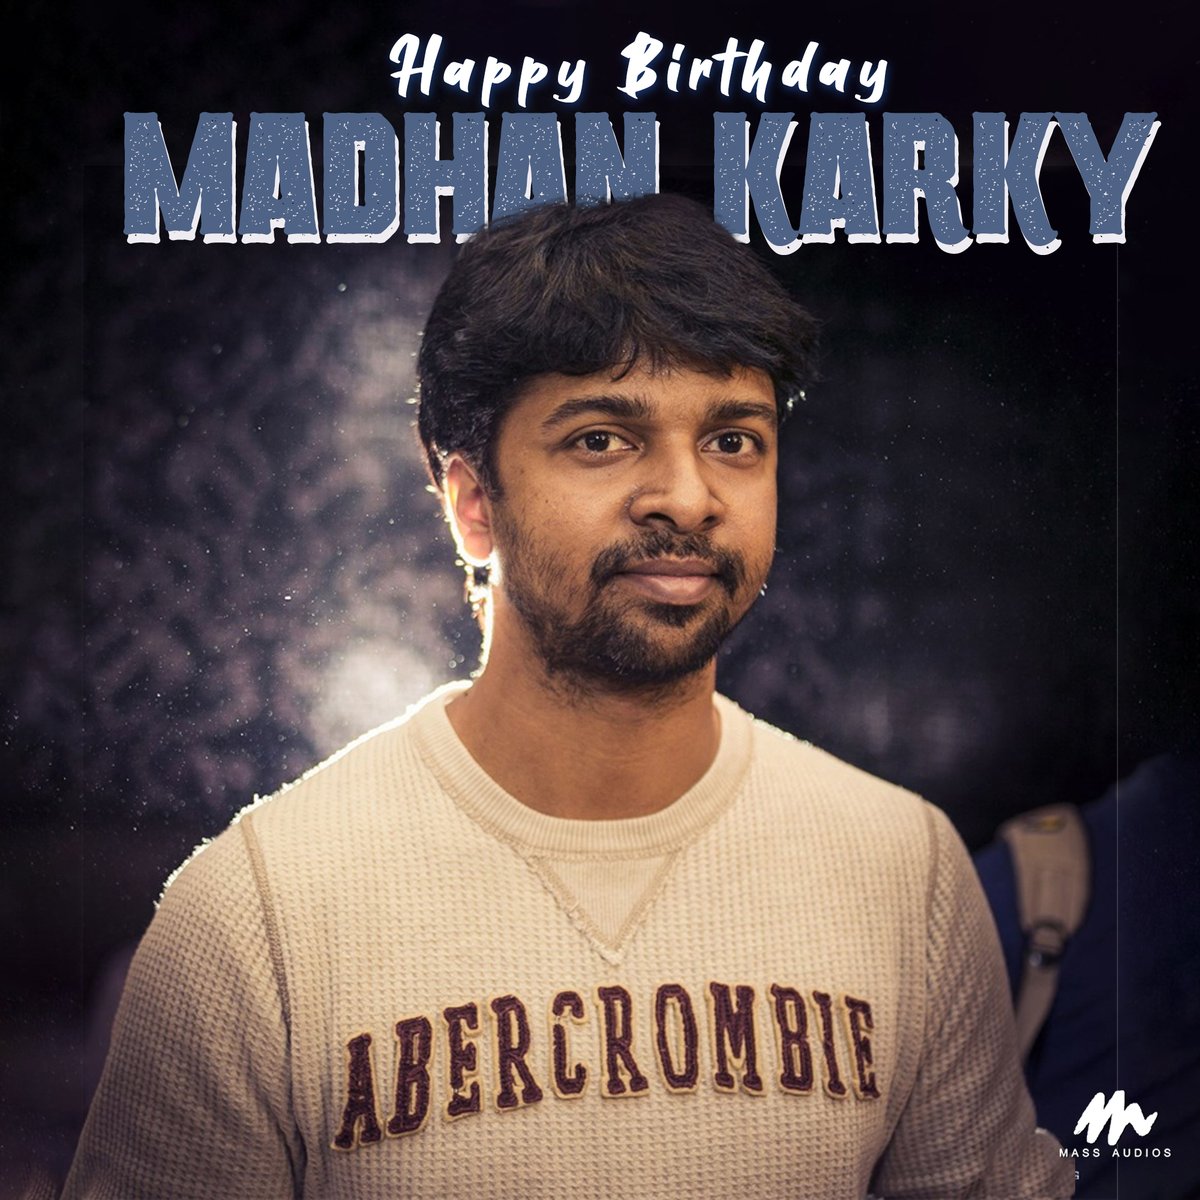 Wishing #MadhanKarky A Very Happy Birthday
#HappybirthdayMadhanKarky #hbdMadhanKarky #massaudios